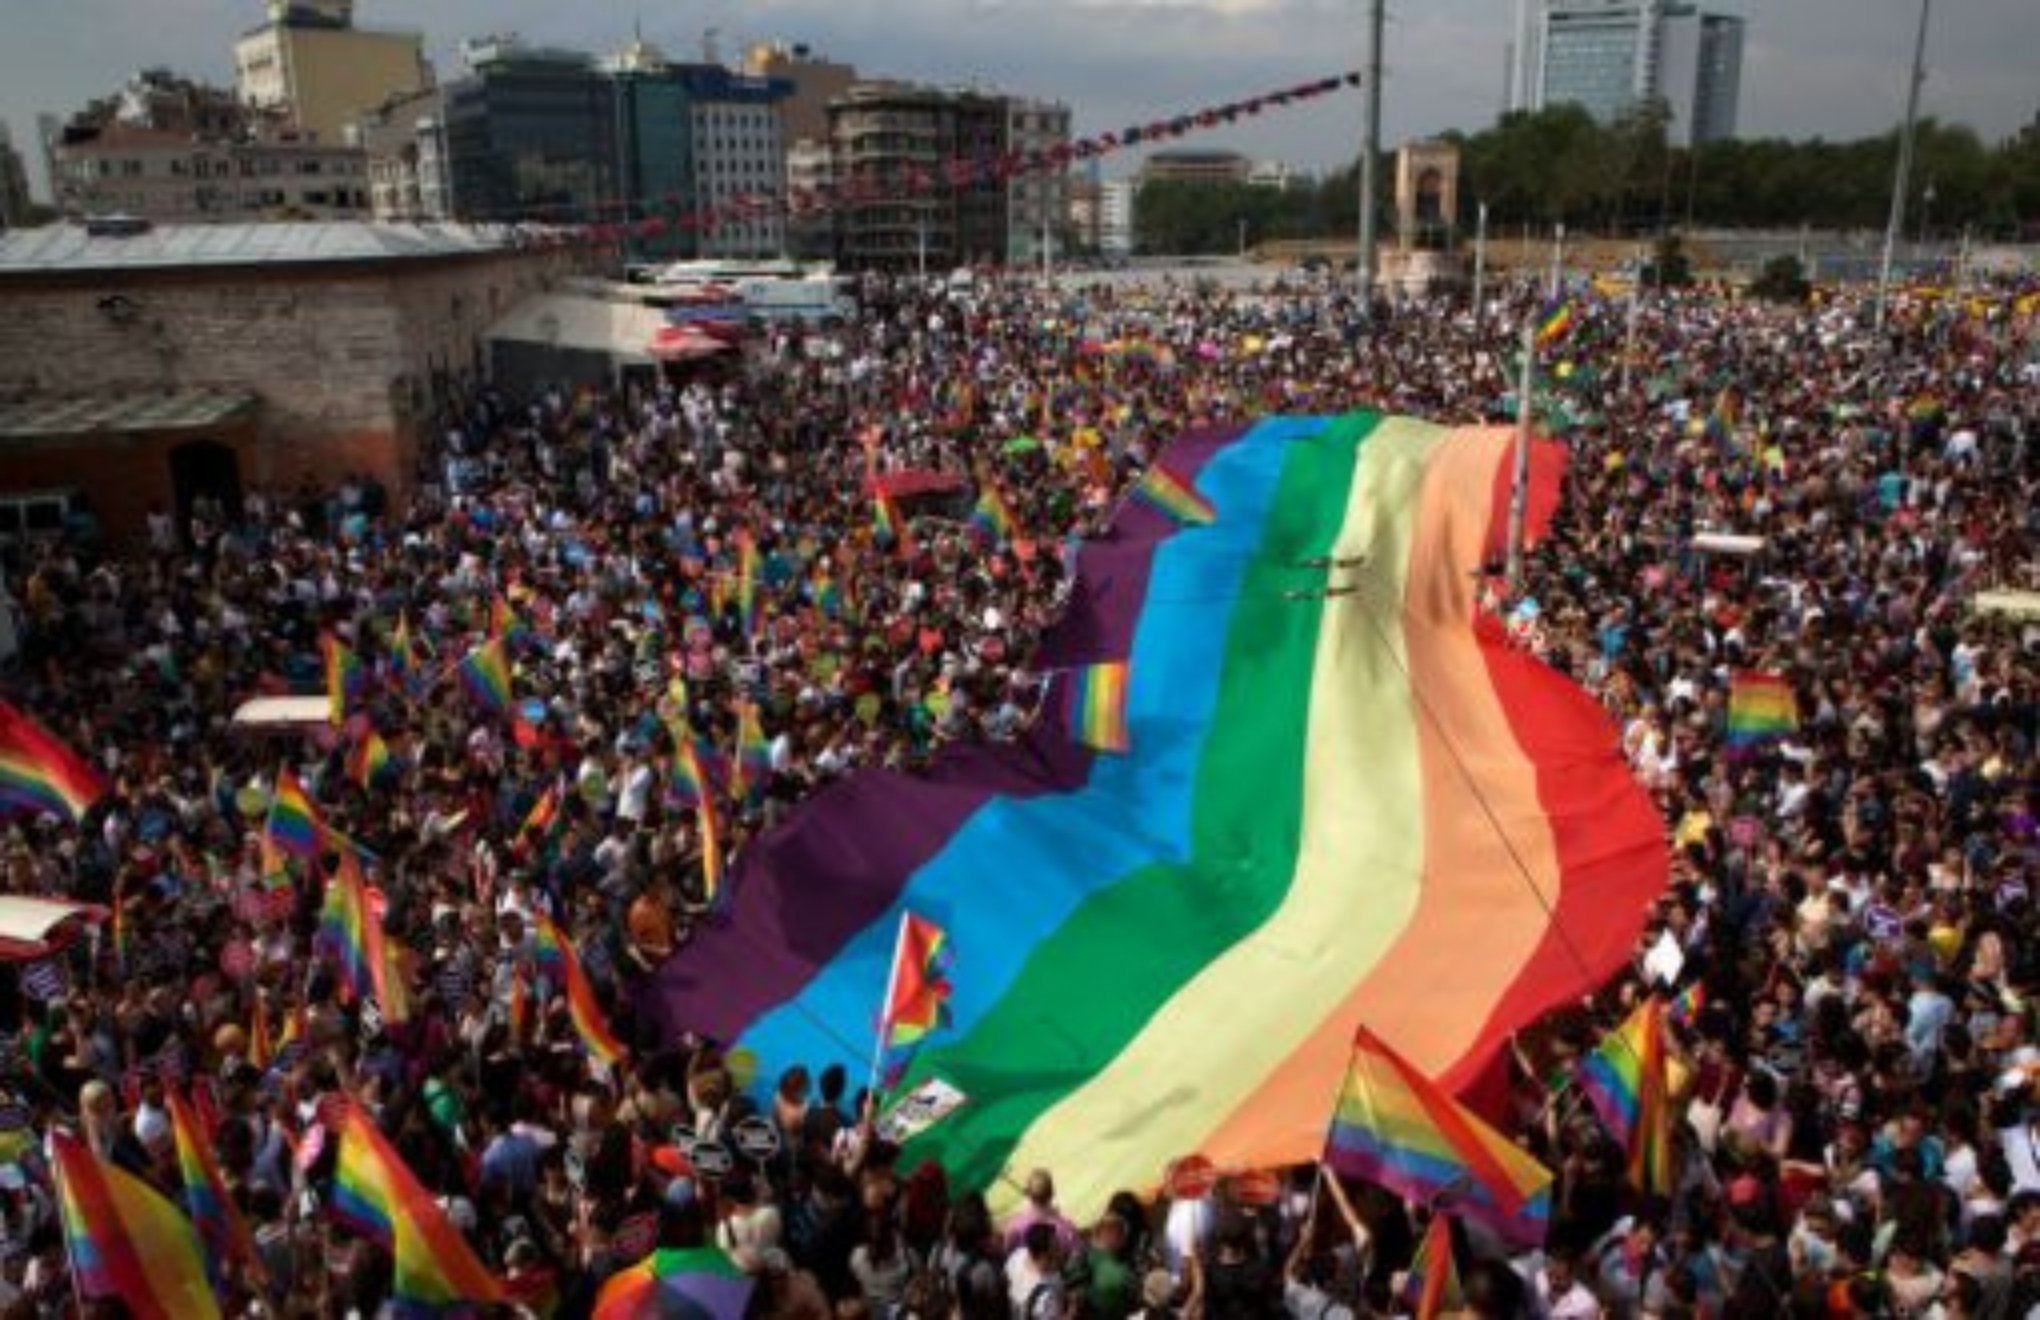 İstanbul Pride Week banned